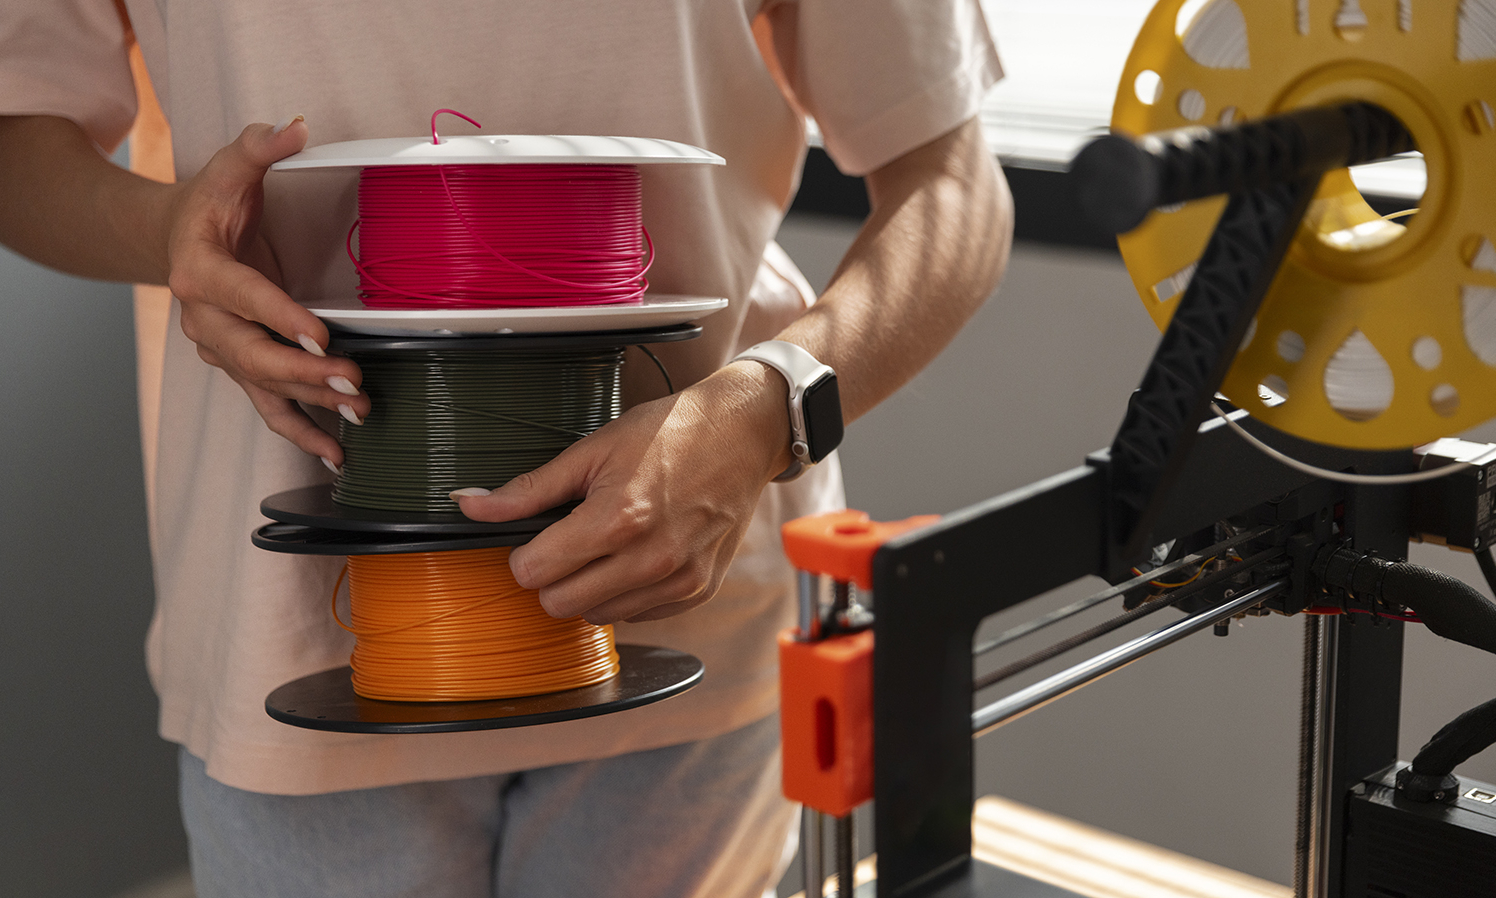 Компания "Меридиан" запустила мелкосерийное производство изделий из пластика с использованием 3D печати